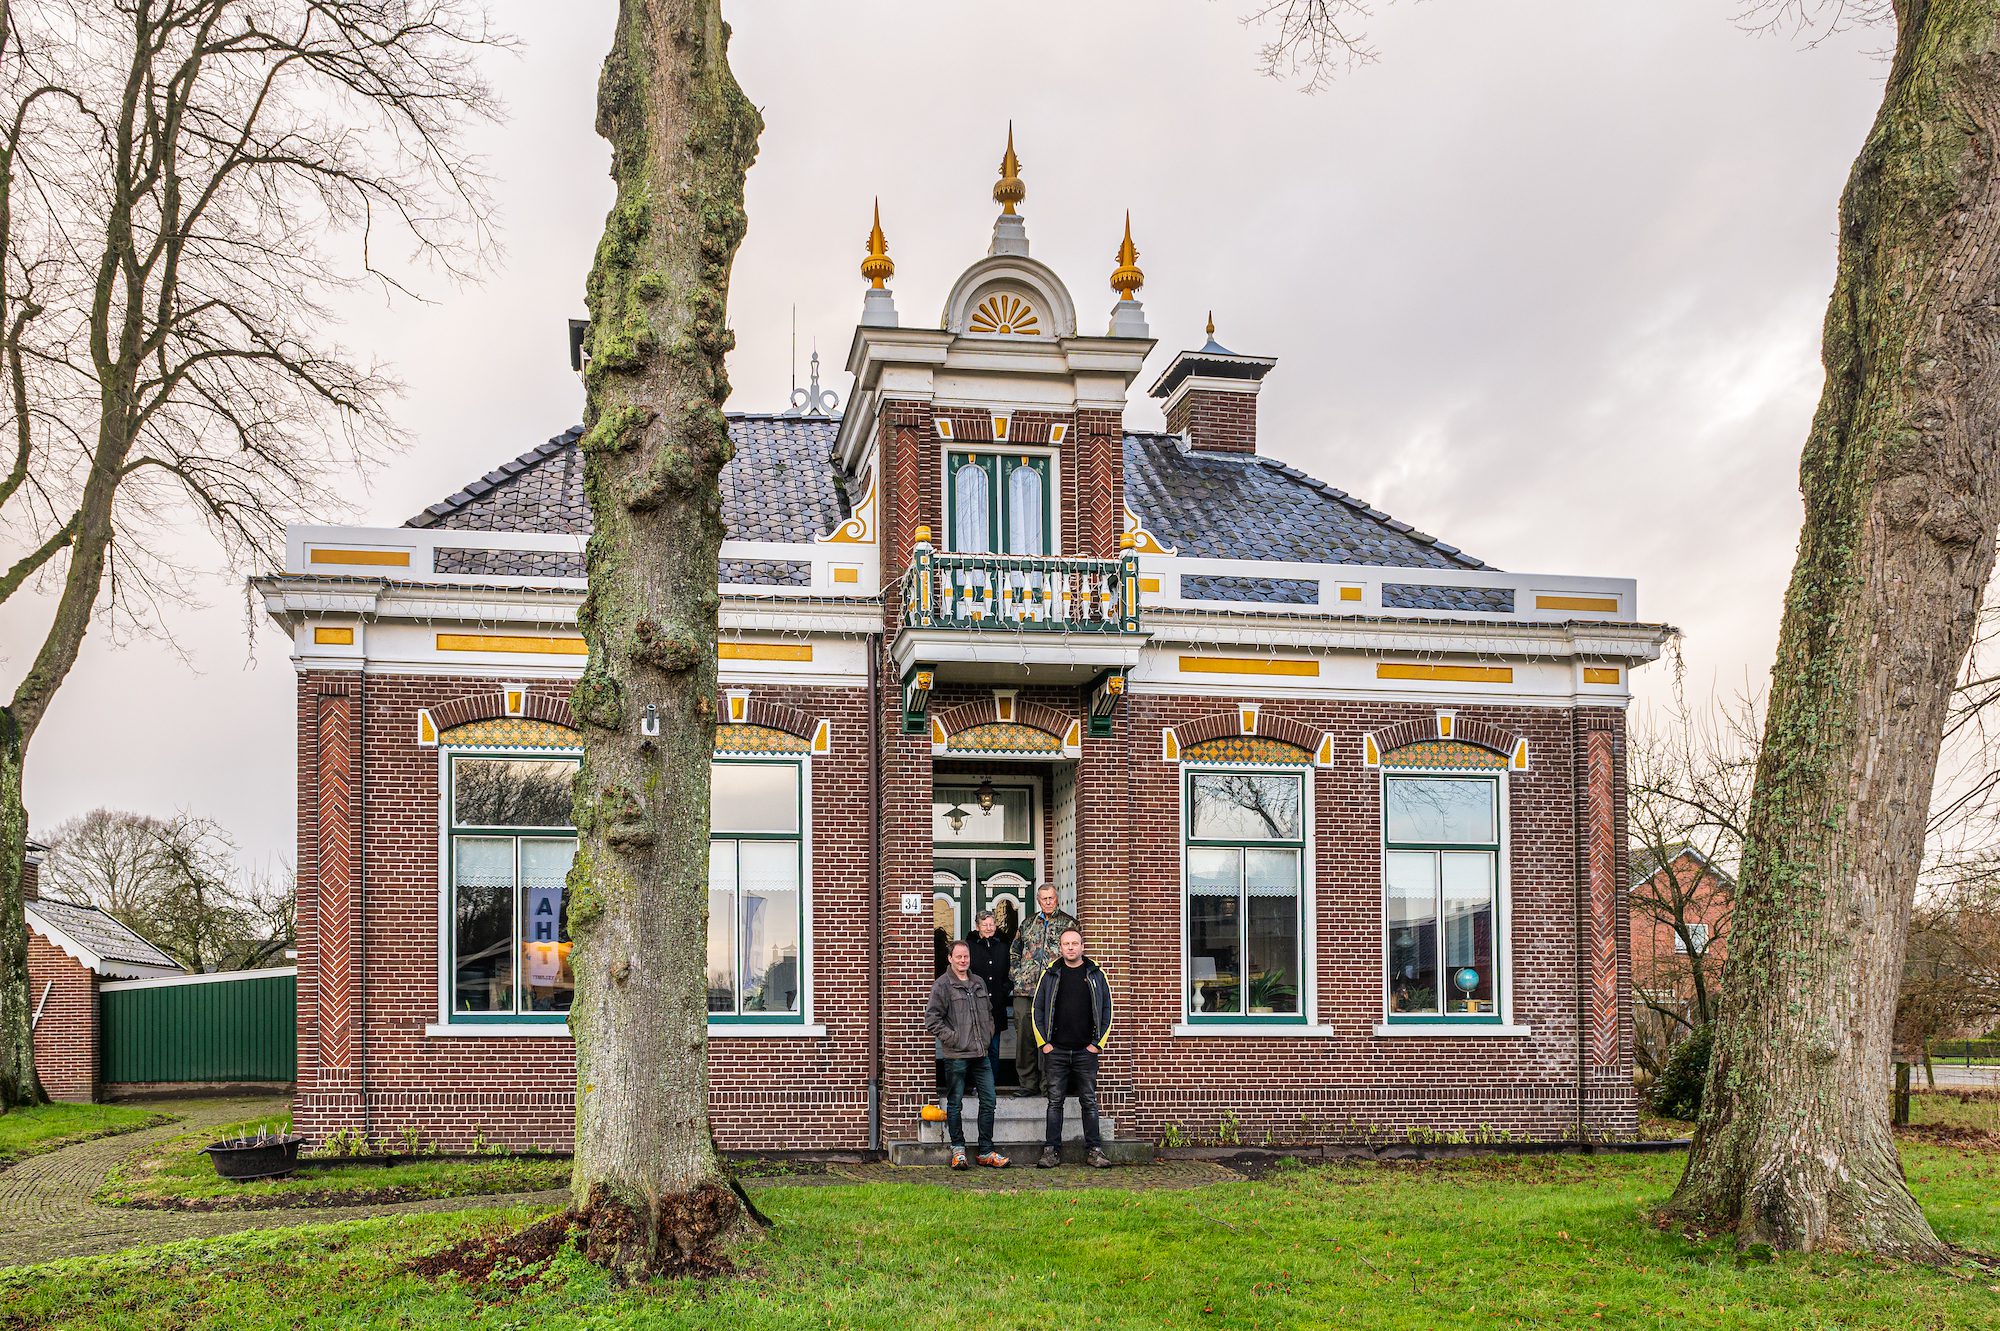 Dwarshuisboerderij in Twijzel veranderd in Rijksmonument